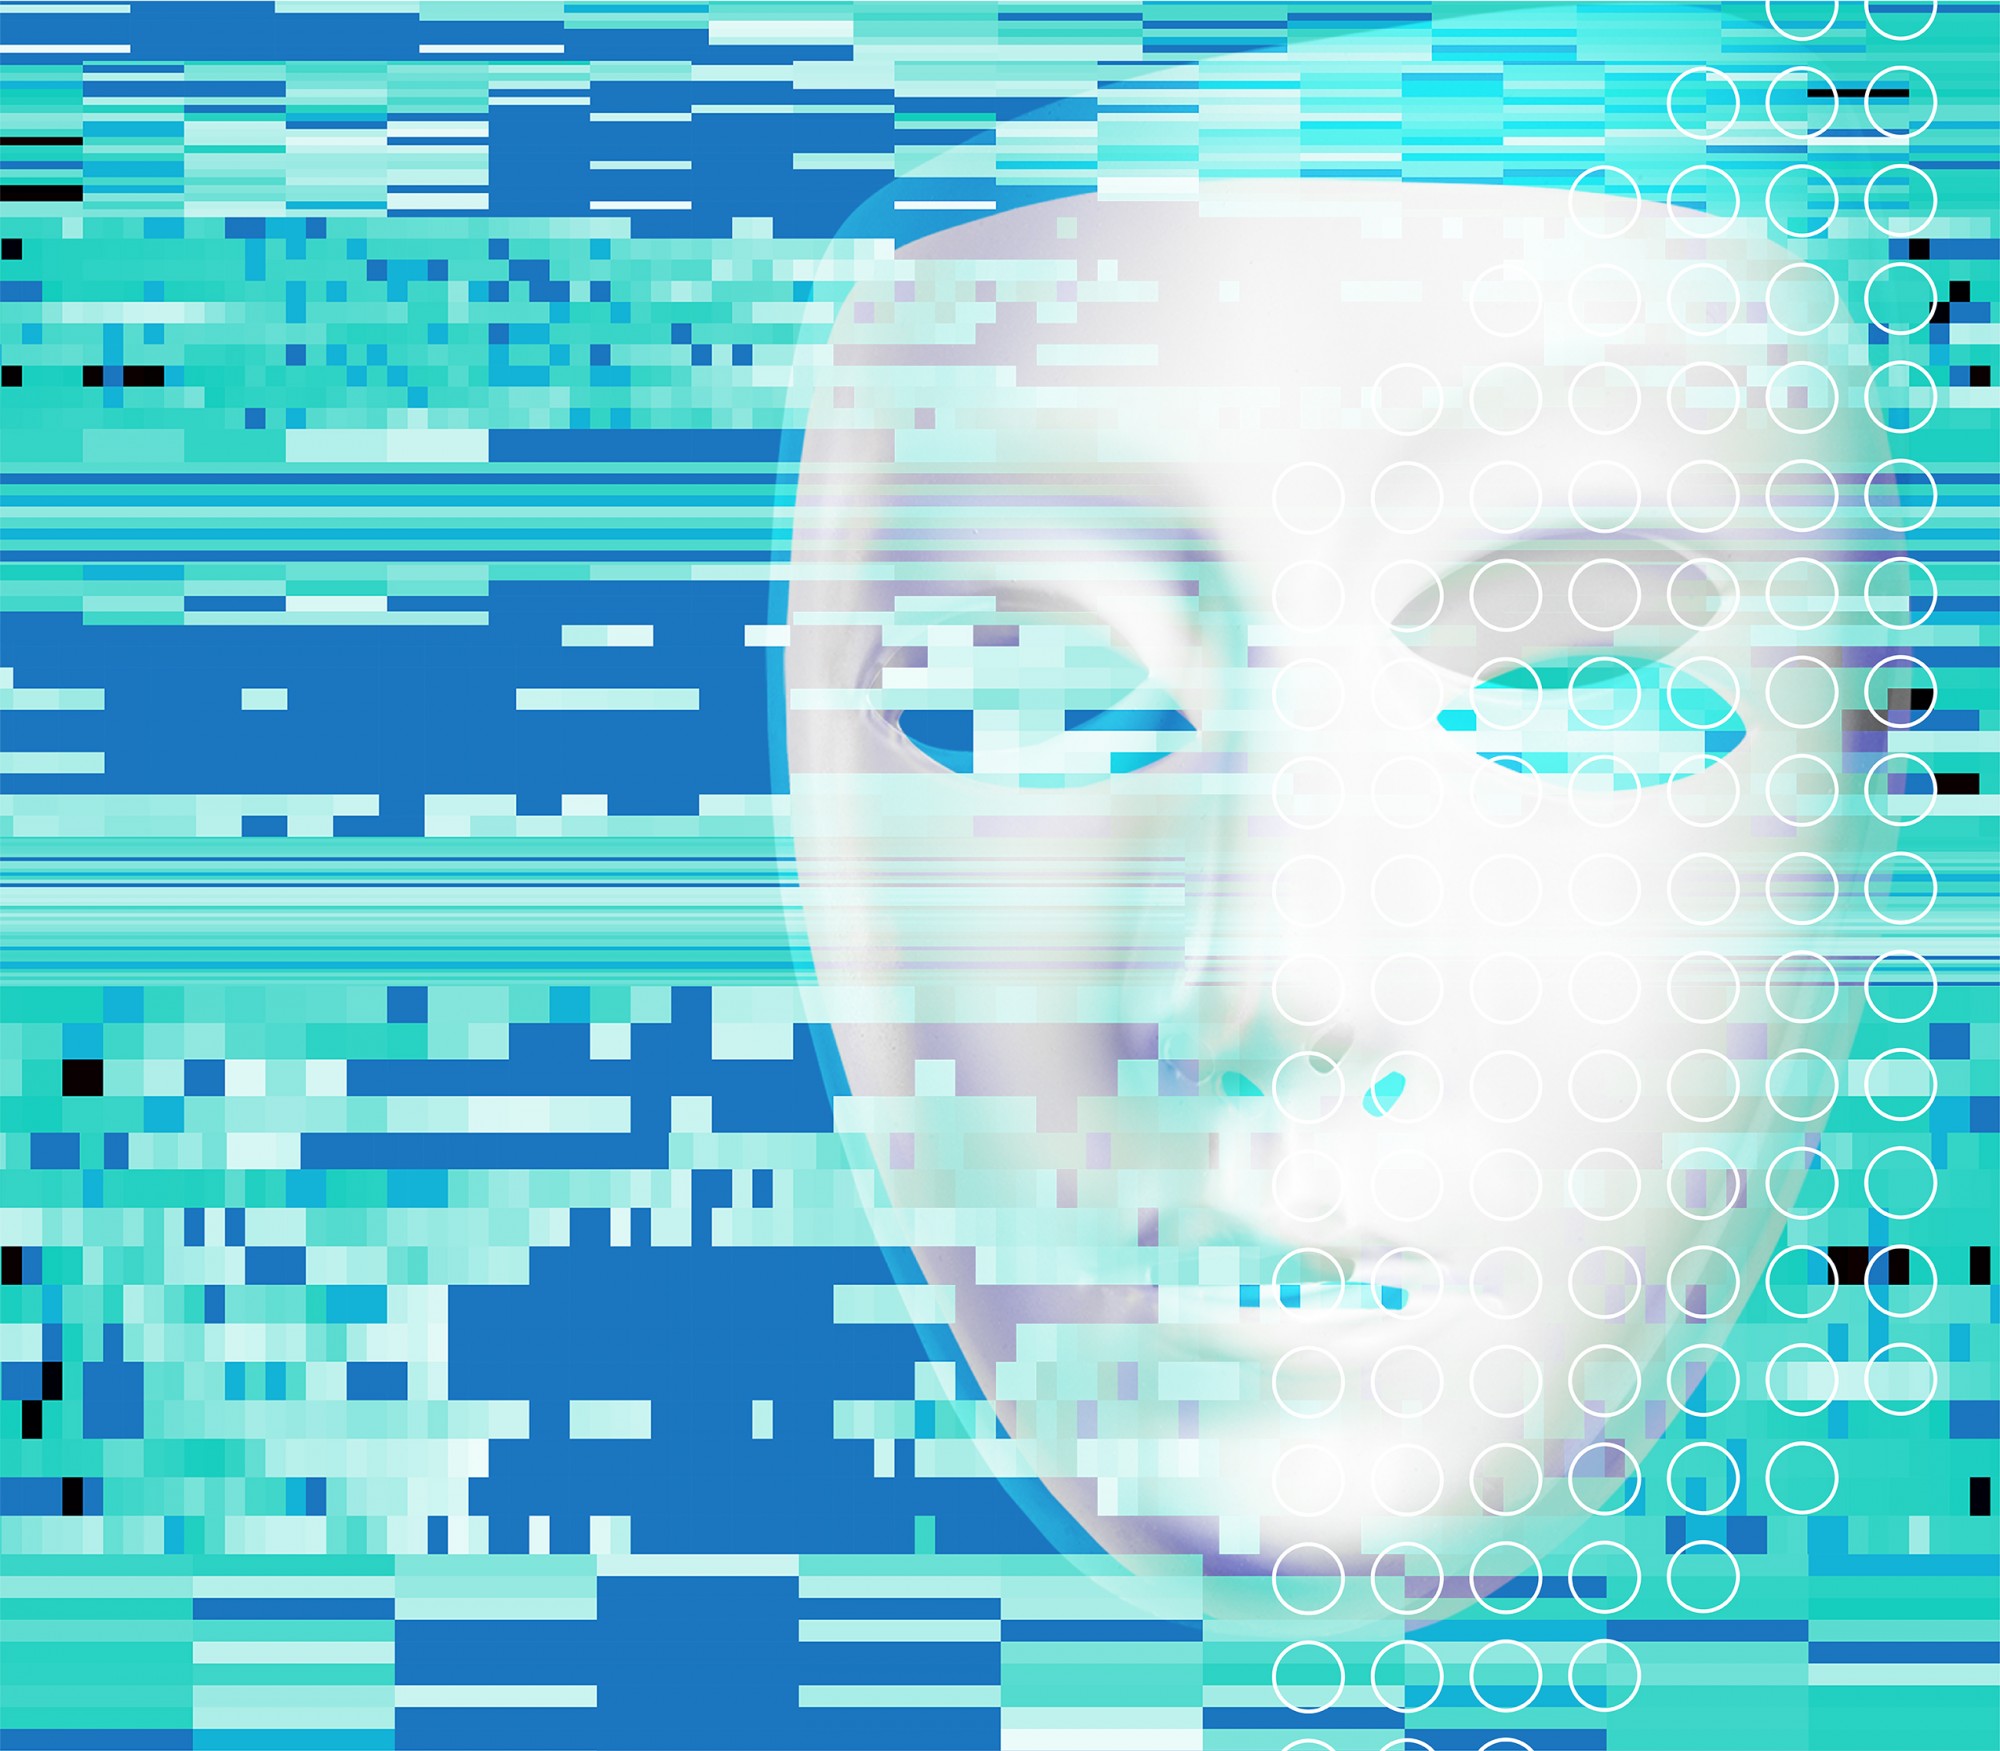 türkise, nebelartige Pixel über schlichter, weißer Gesichtsmaske vor blauem Hintergrund